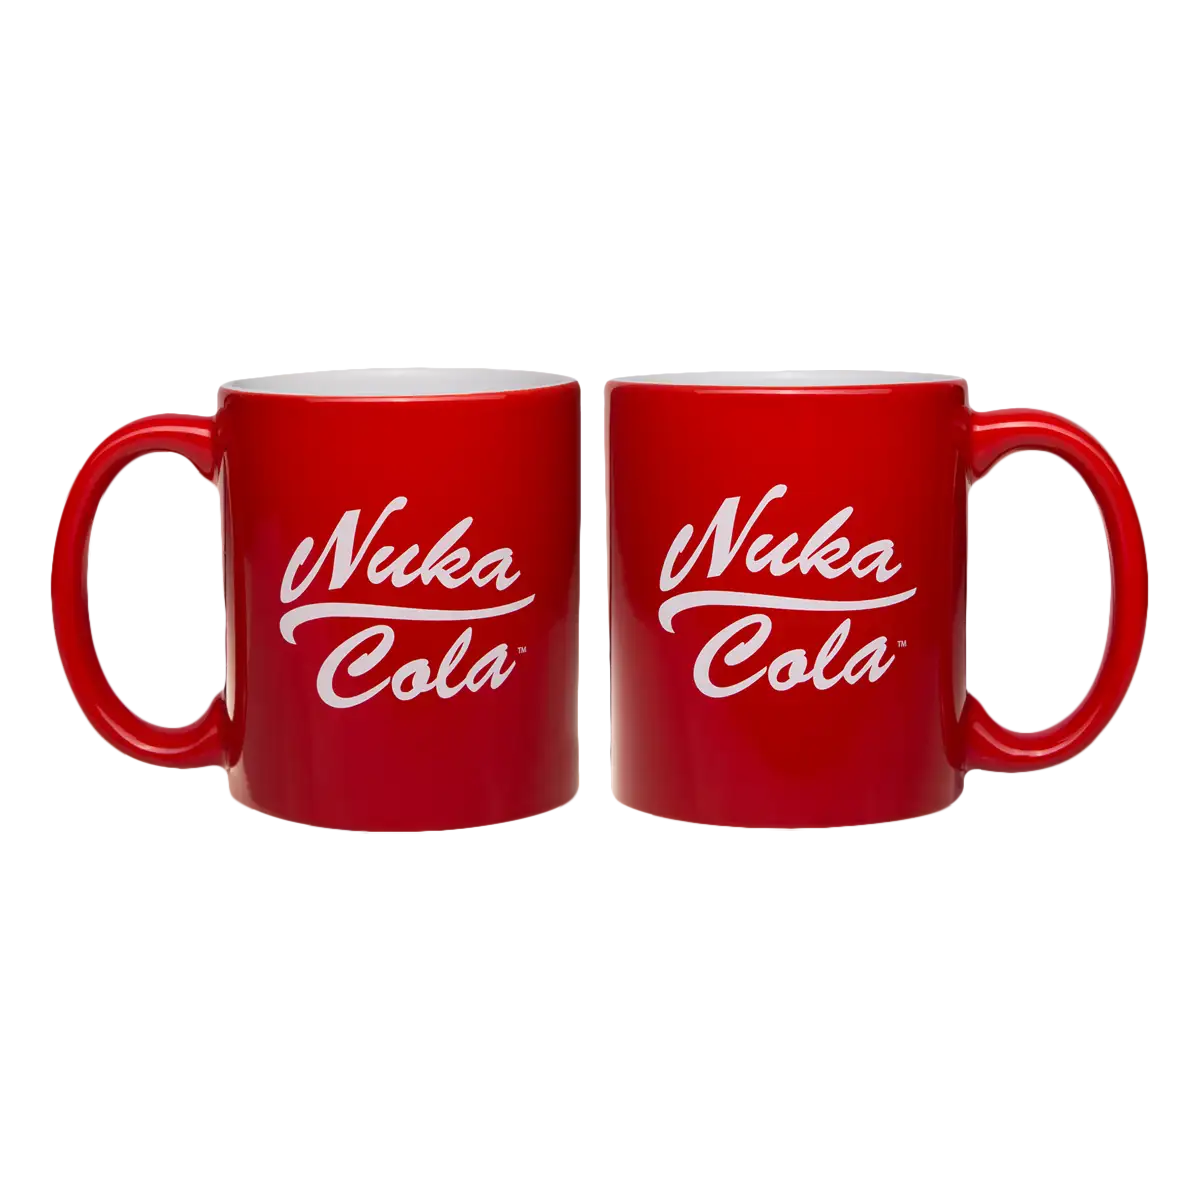 Fallout Mug "Nuka Cola"